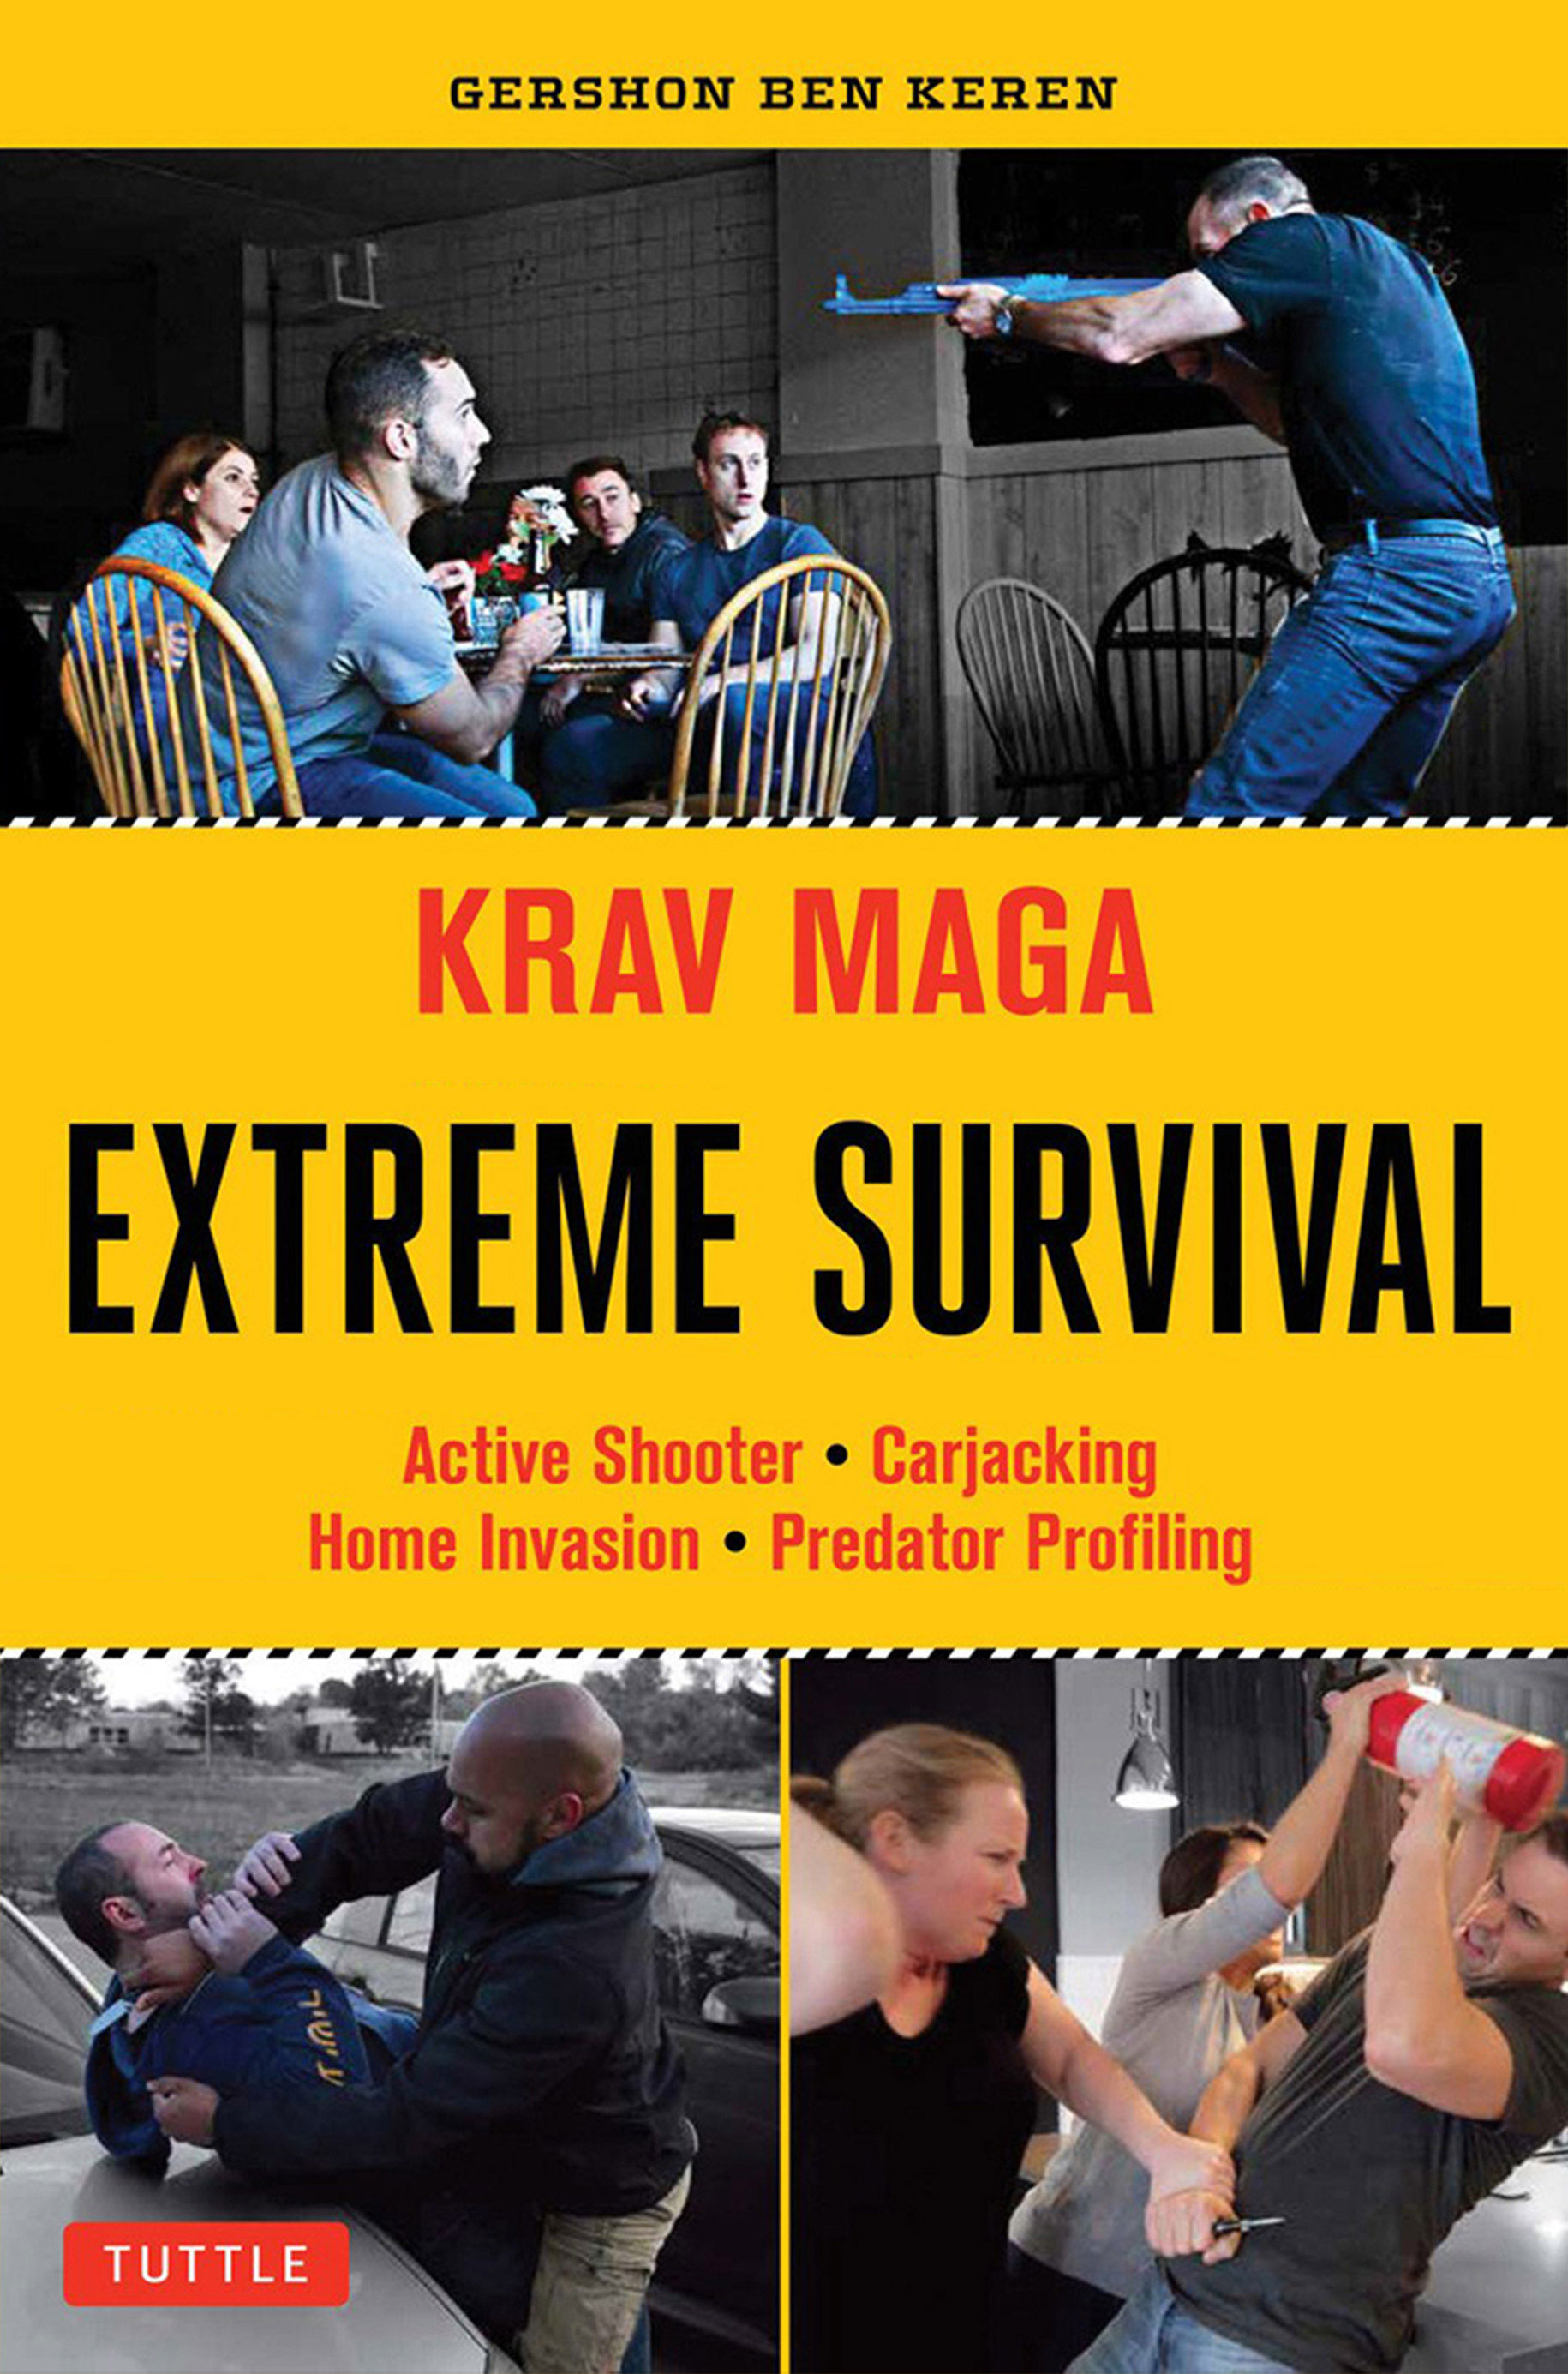 Krav Maga - Extreme Survival (Gershon Ben Keren)